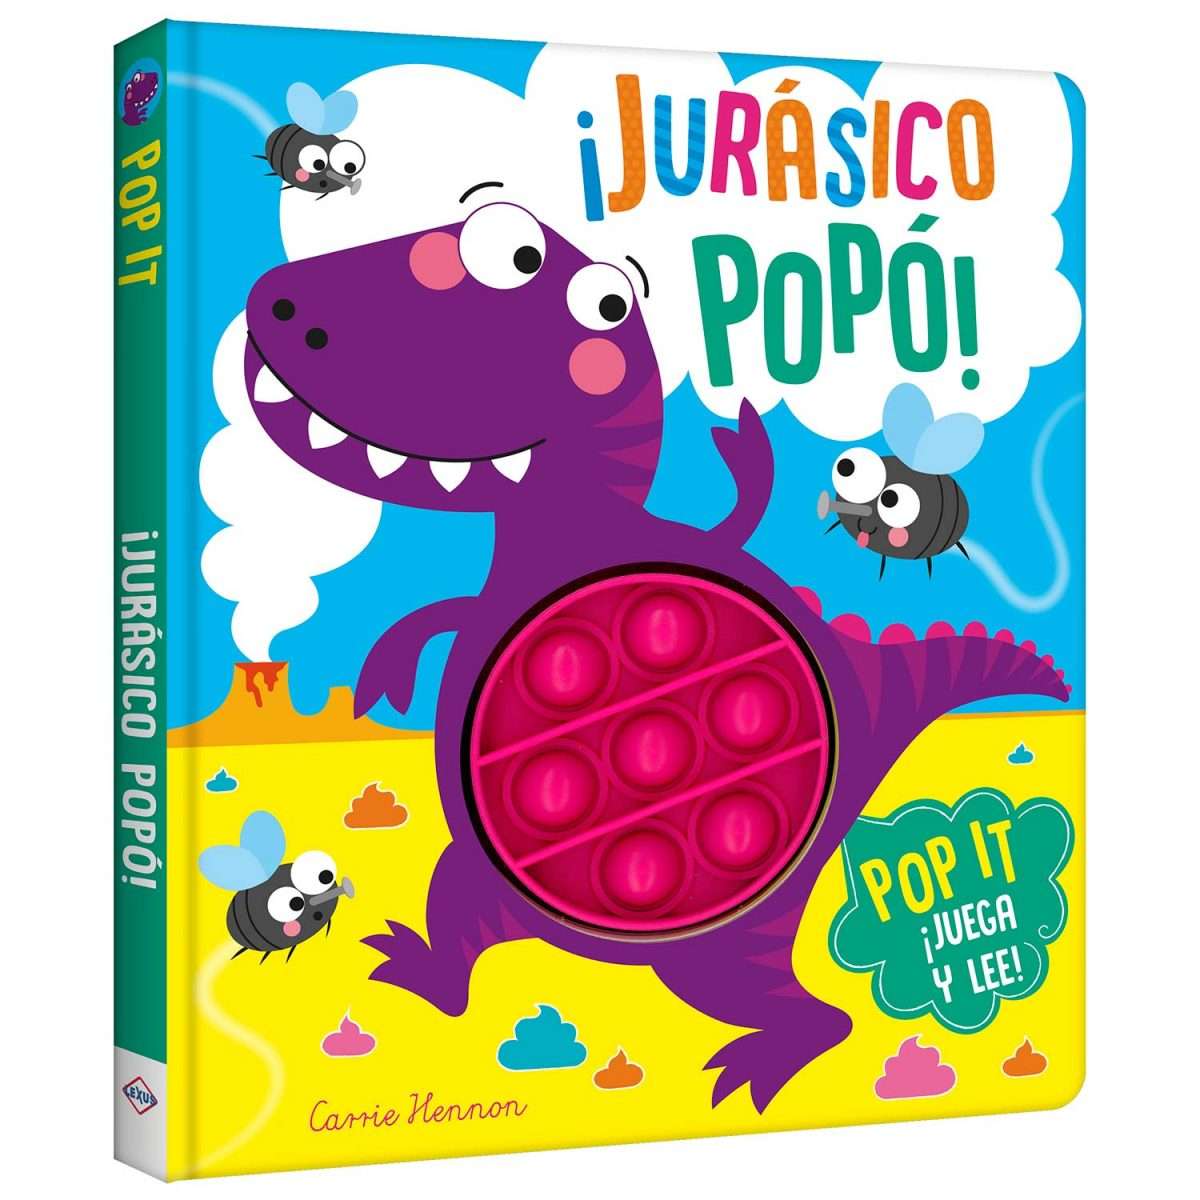 ¡Jurásico Popó! – Pop It